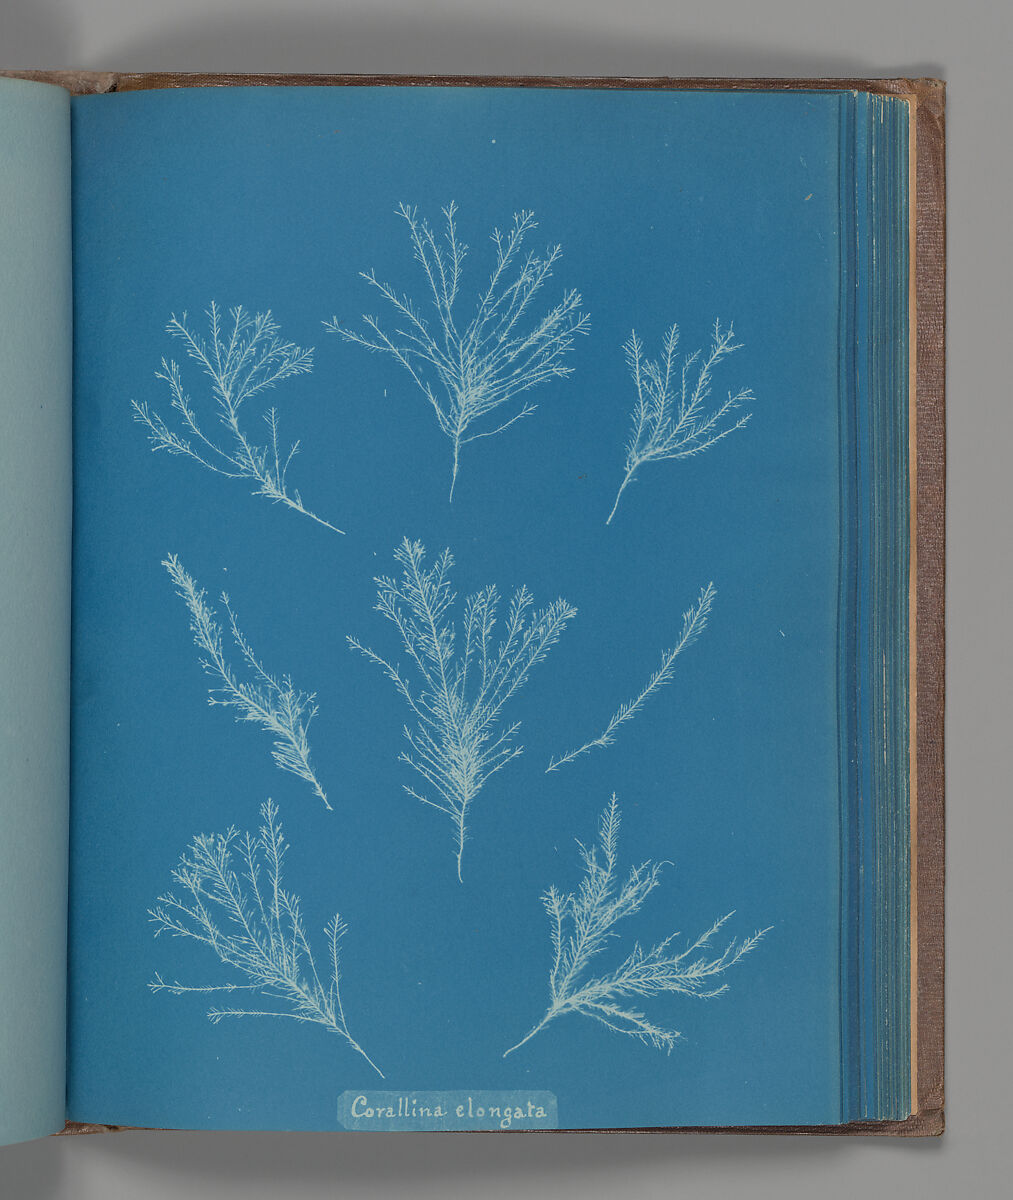 Corallina elongata, Anna Atkins (British, 1799–1871), Cyanotype 